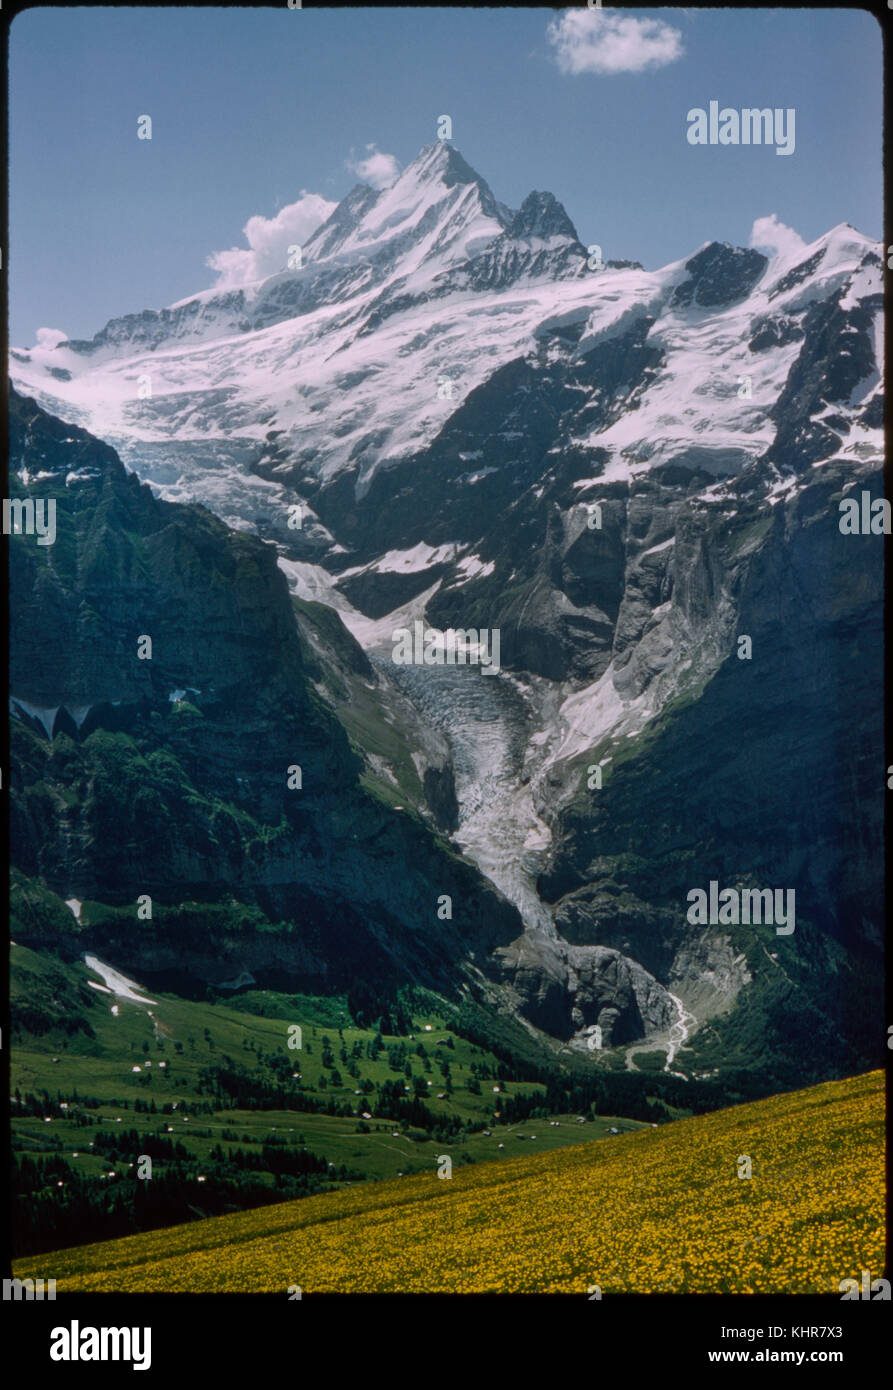 Fille de glacier et de crête, Grindelwald, Suisse, 1964 Banque D'Images